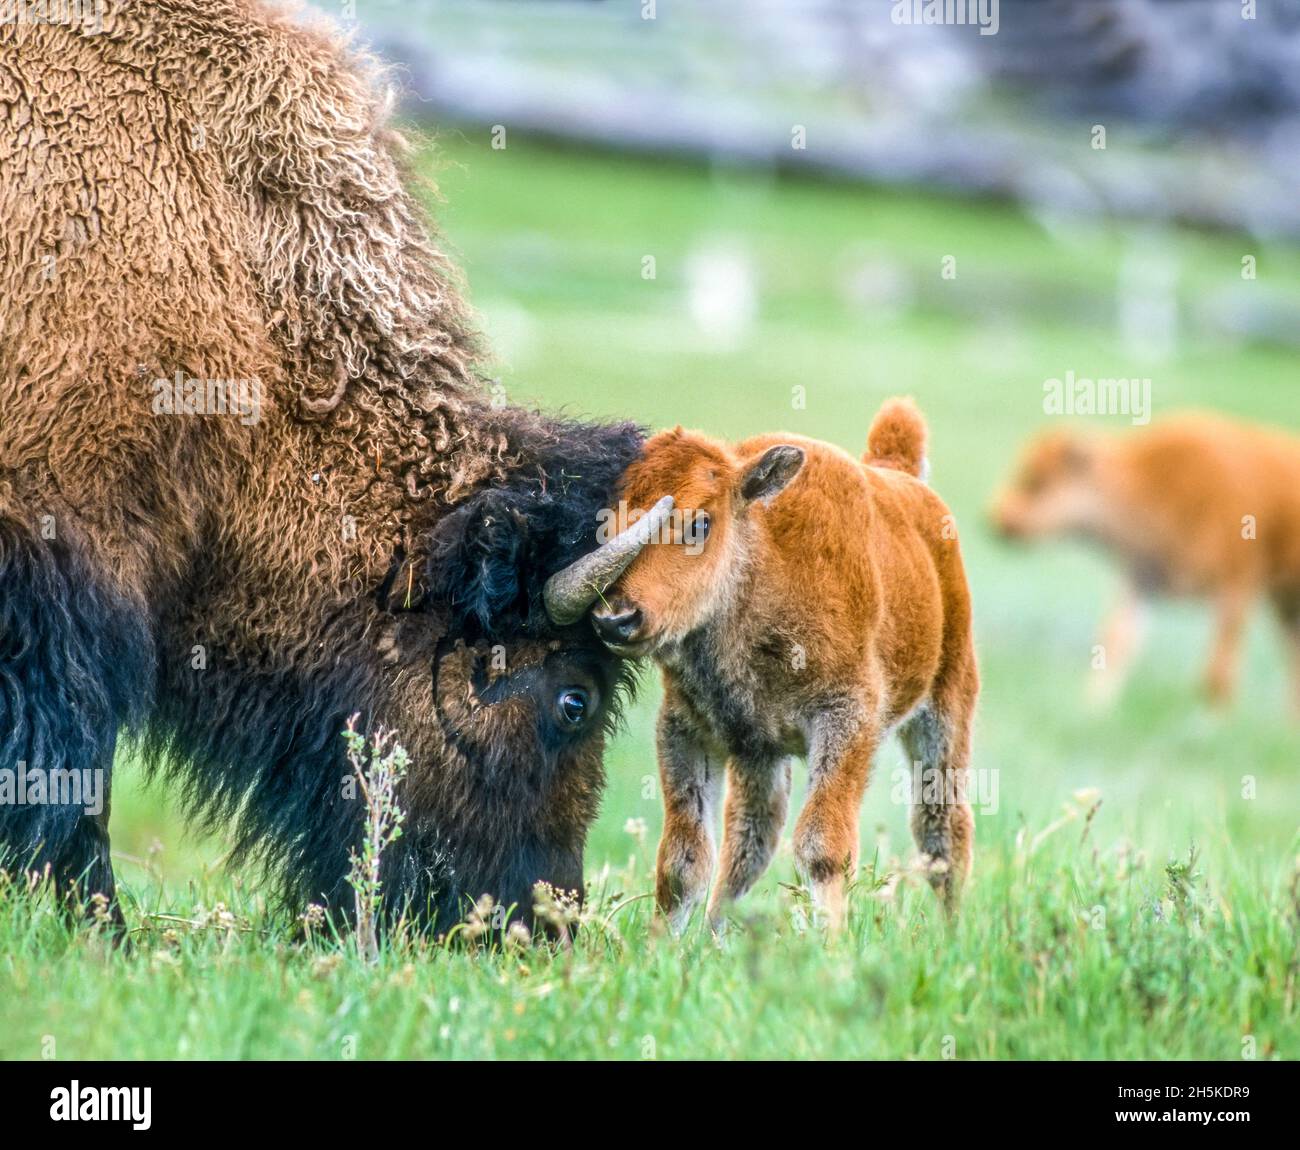 Vache de bison d'Amérique (bison de bison) et collage de veau dans un champ herbacé; parc national de Yellowstone, États-Unis d'Amérique Banque D'Images